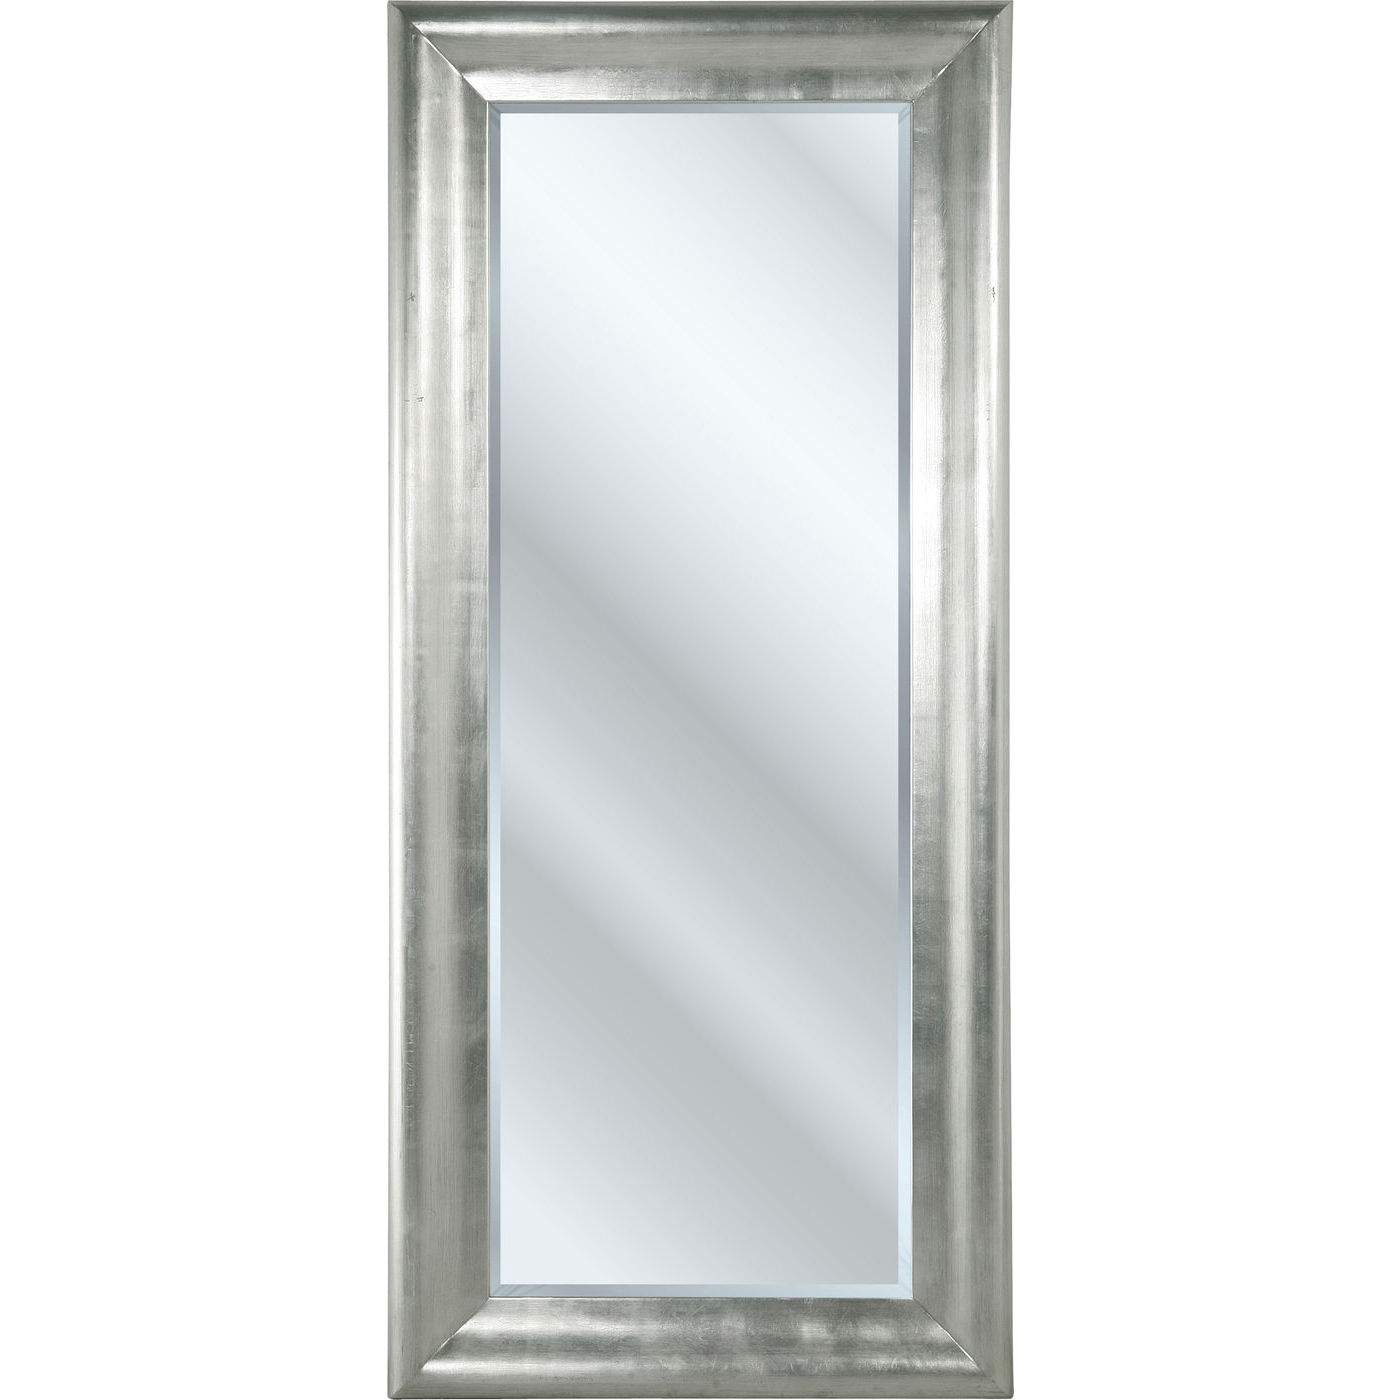 Spiegel Chic 200 x 90 cm Silber